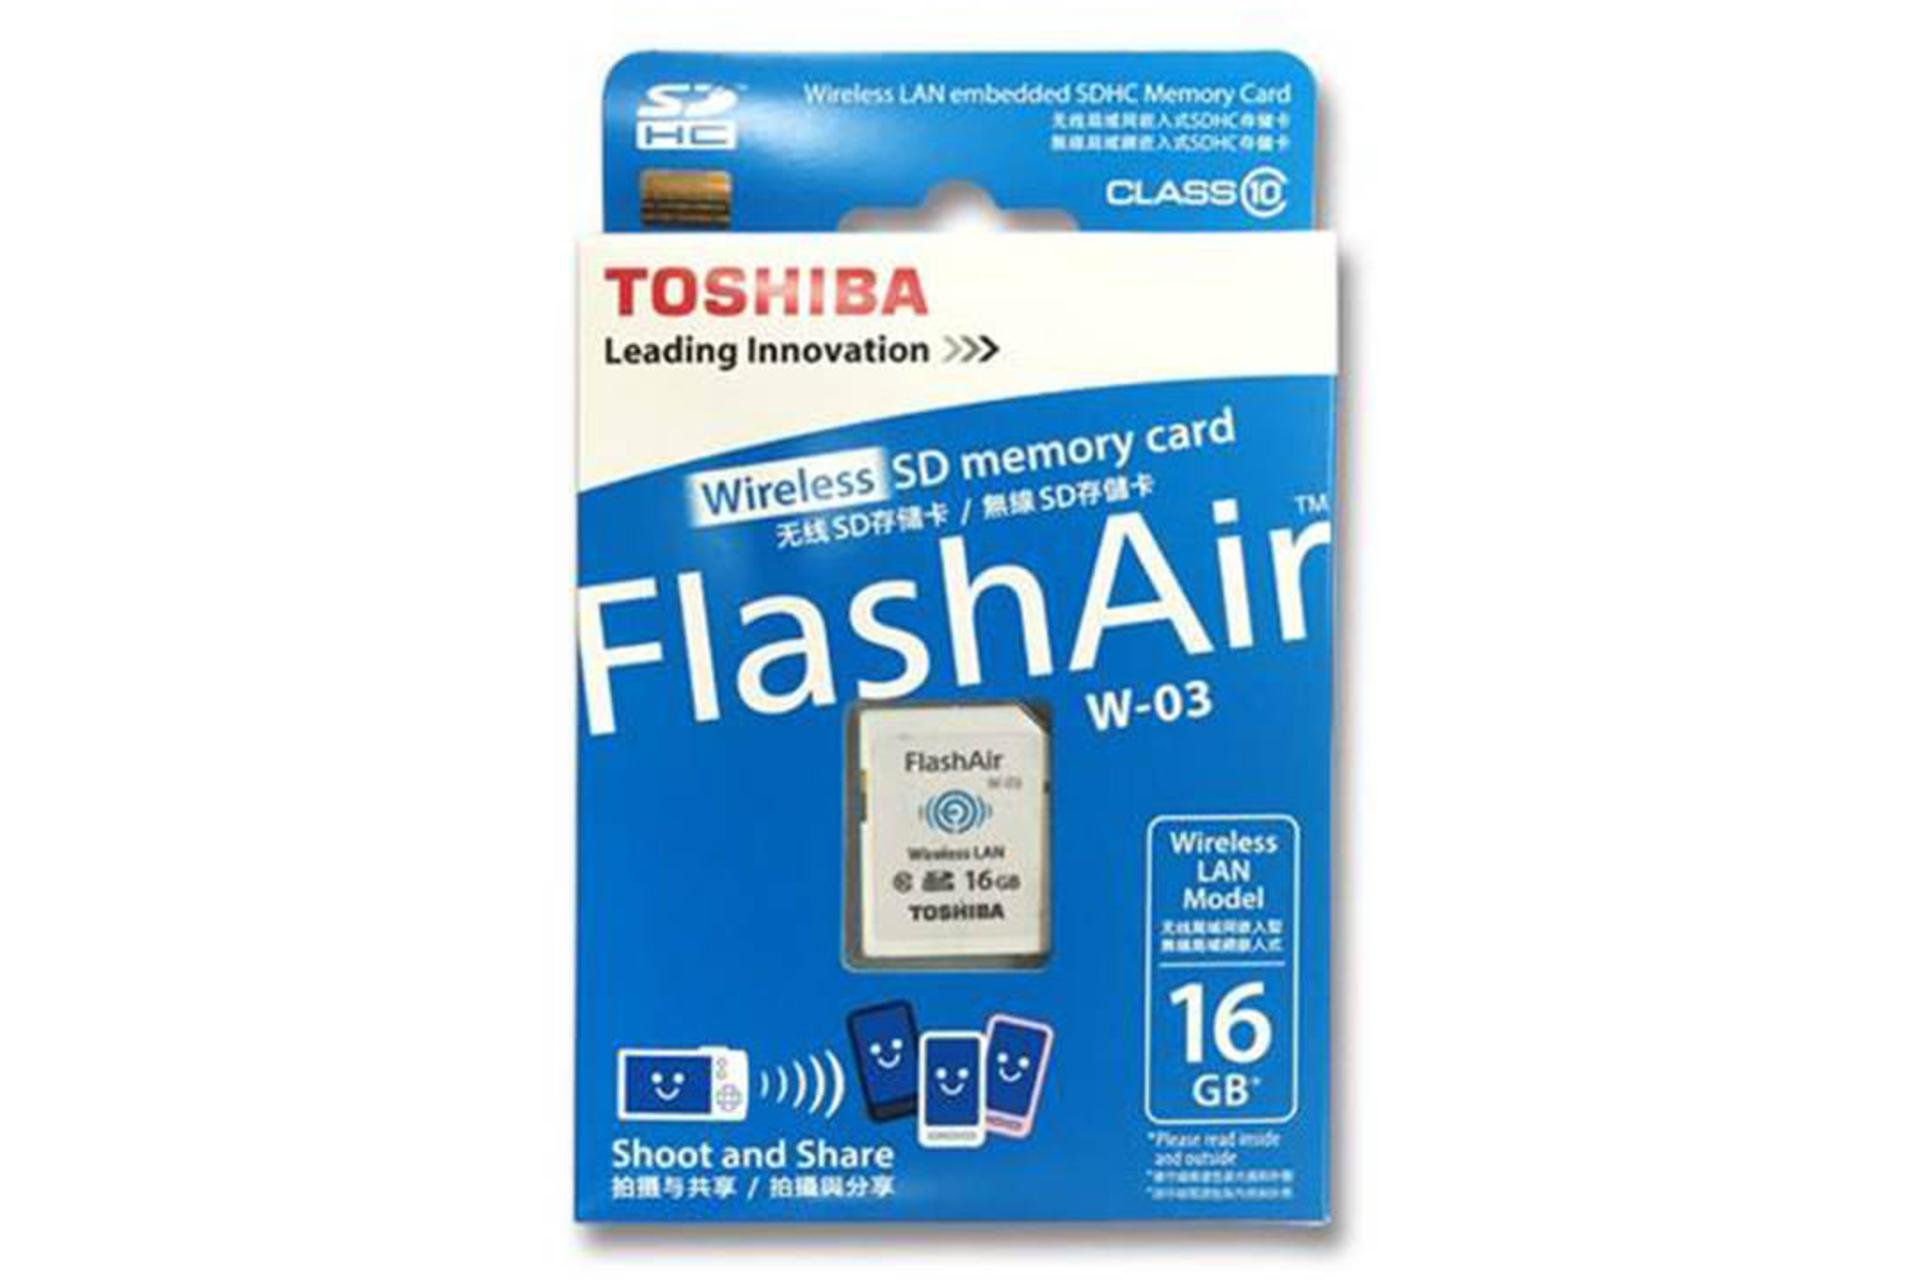 مرجع متخصصين ايران Toshiba Flash Air W-03 SDHC Class 10 16GB